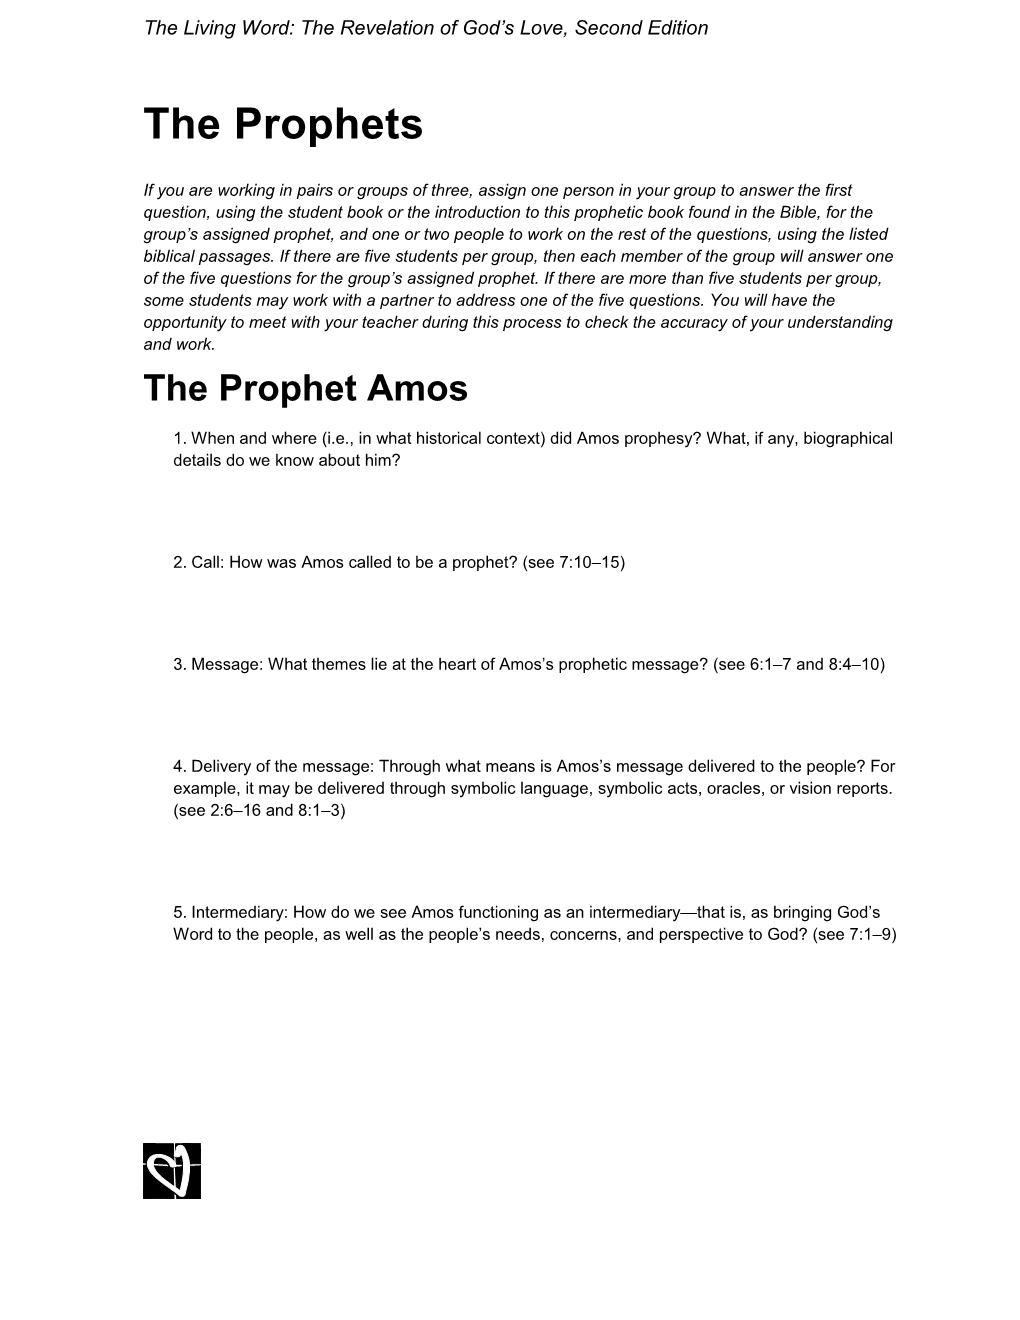 The Prophet Amos